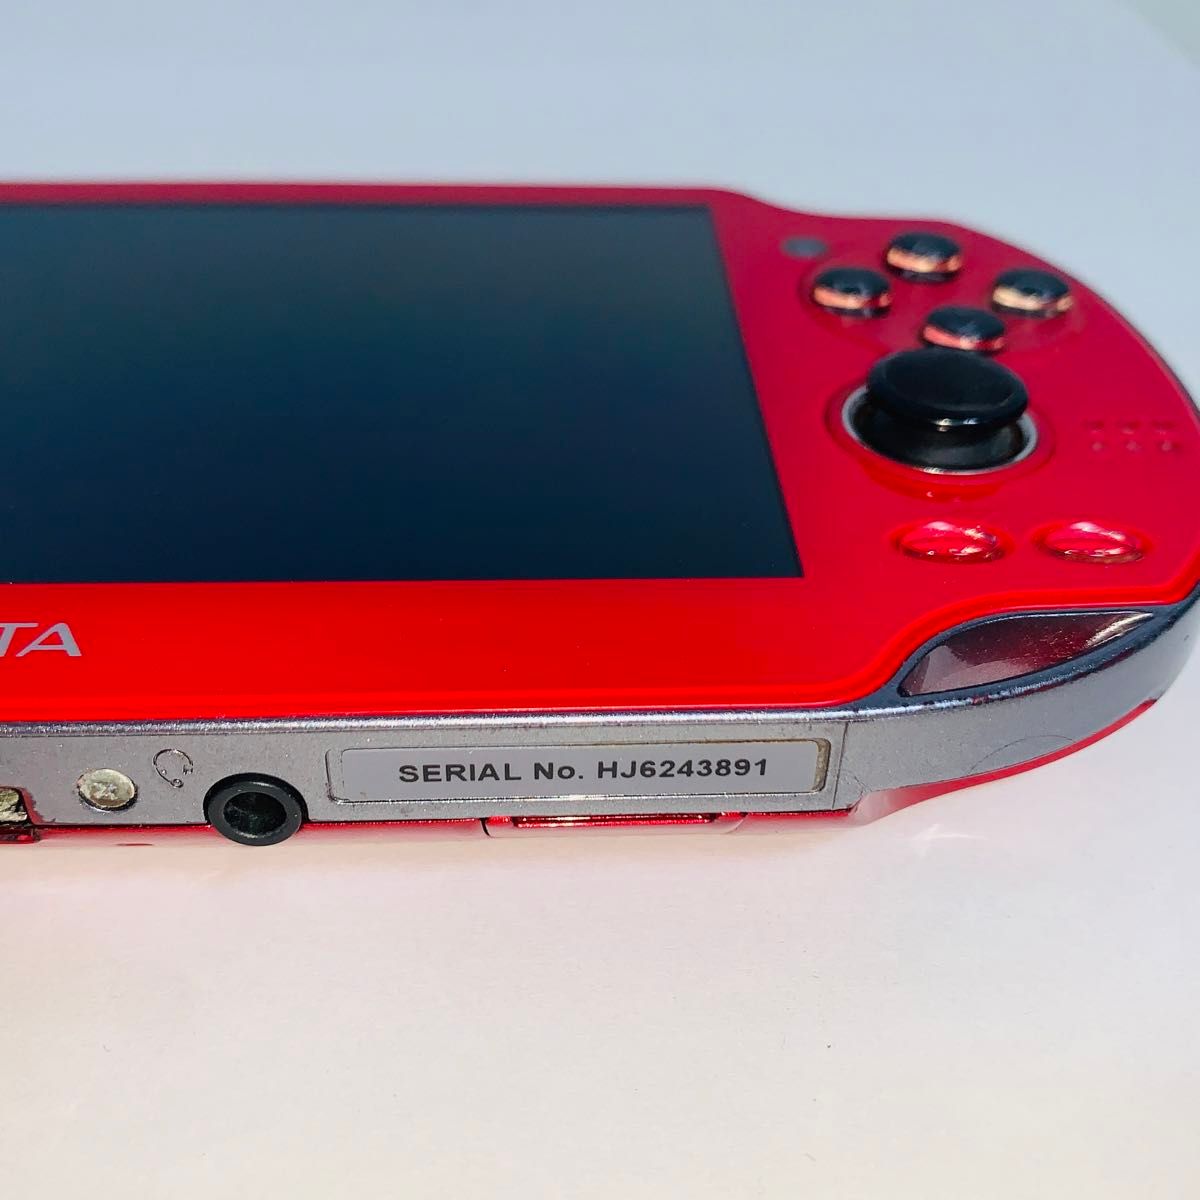 【247】 PS Vita Wi-Fiモデル コズミックレッド PCH-1100